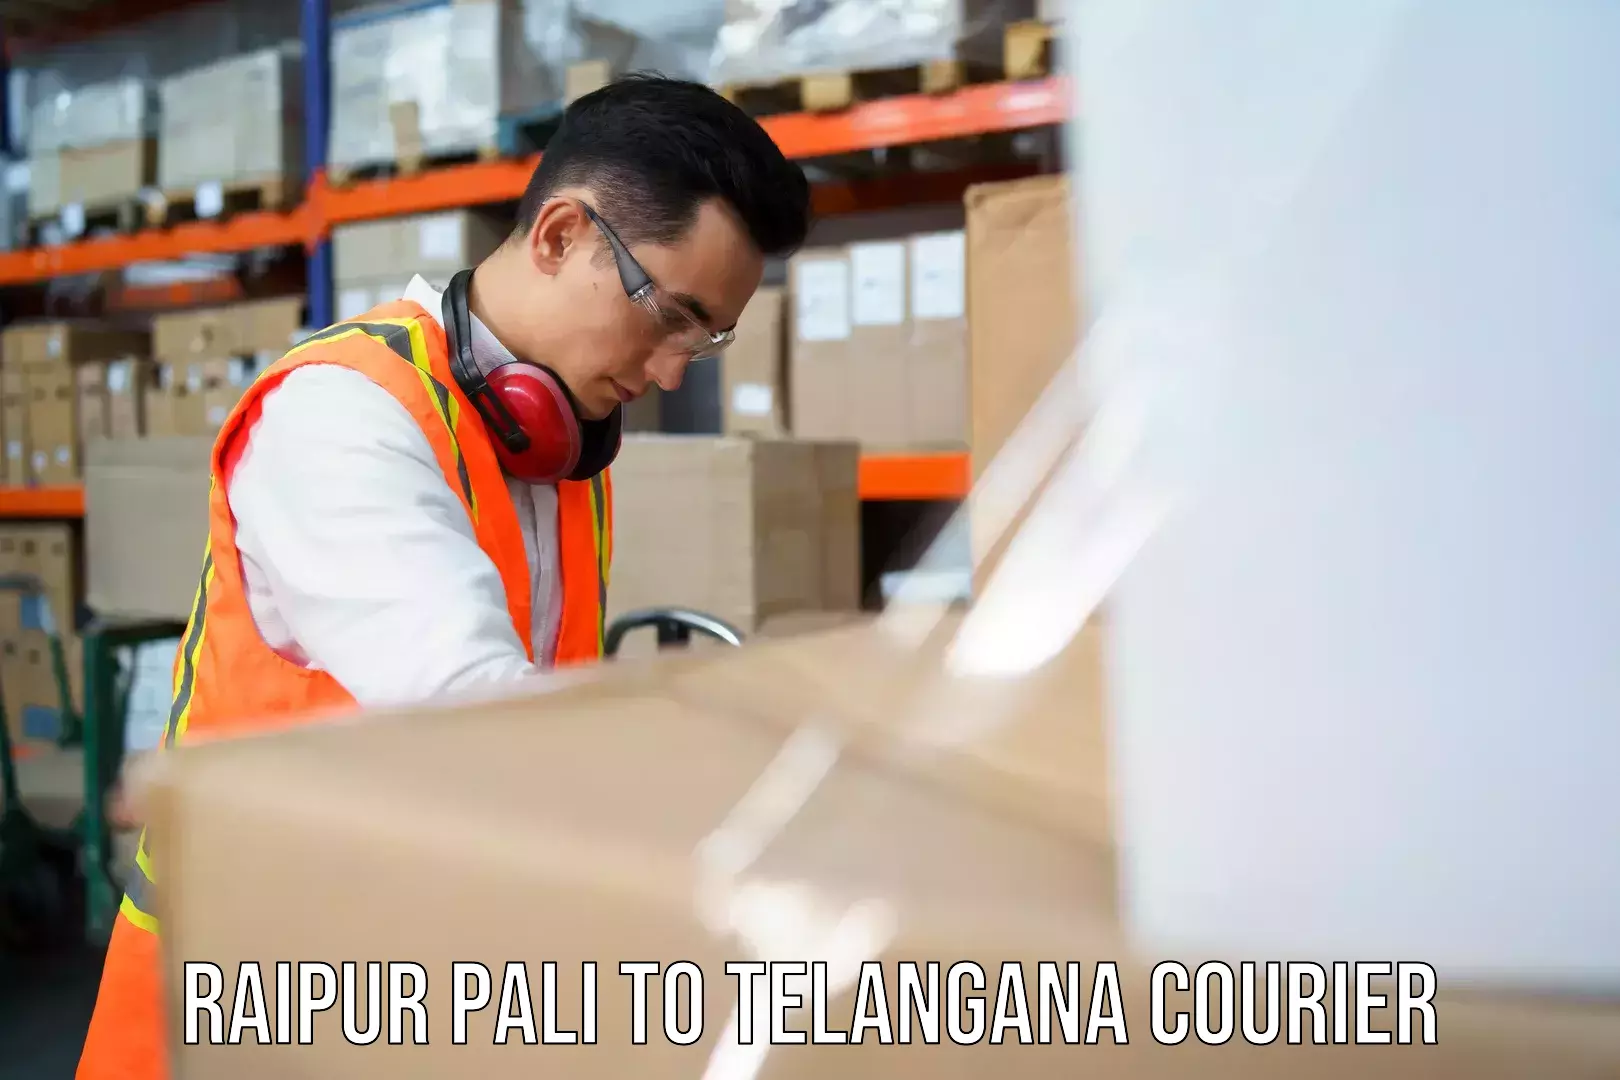 Diverse delivery methods Raipur Pali to Jammikunta